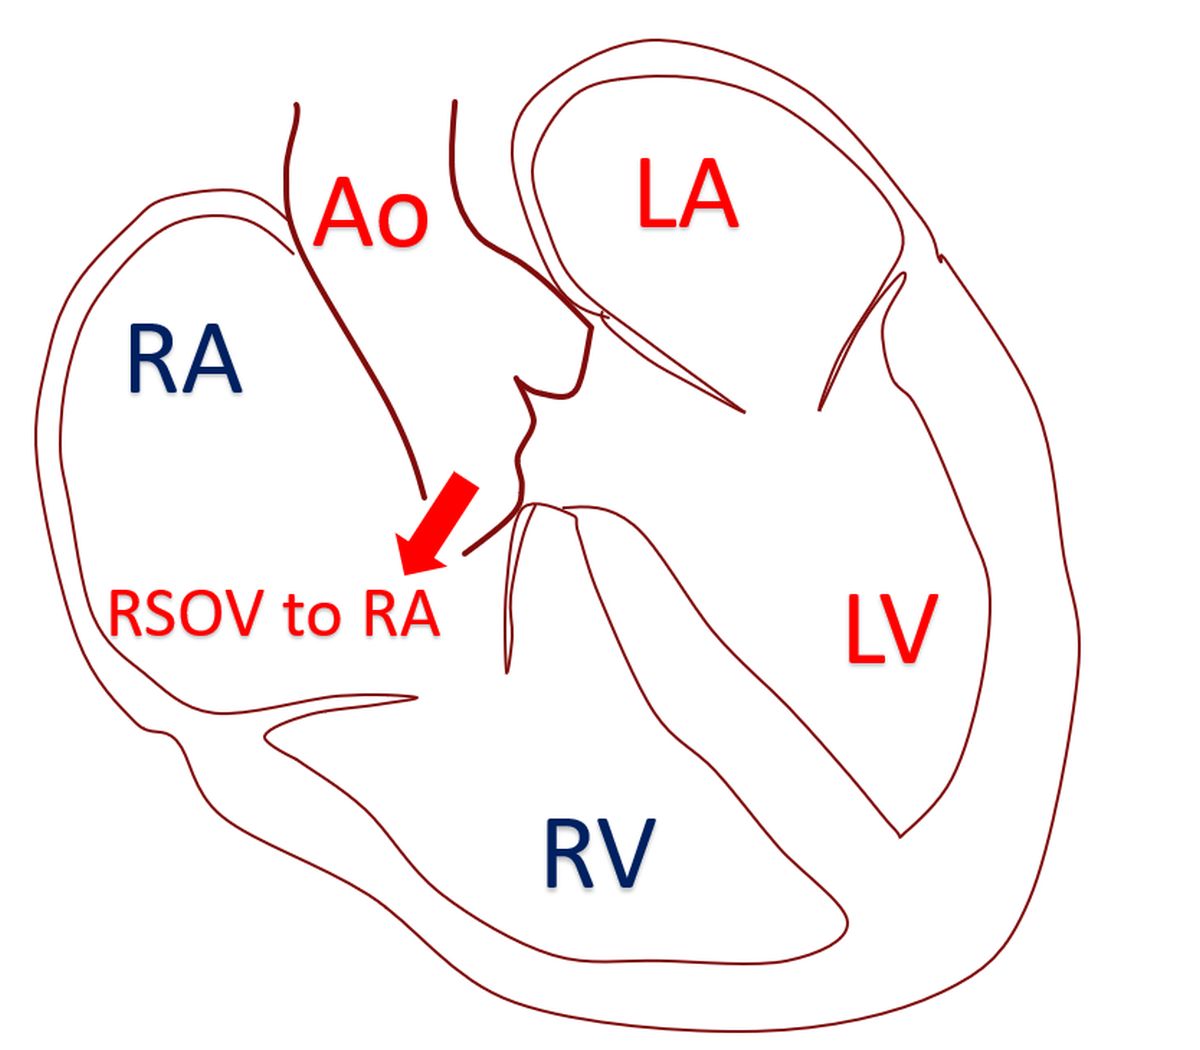 Rupture of sinus of Valsalva aneurysm (RSOV) to right atrium